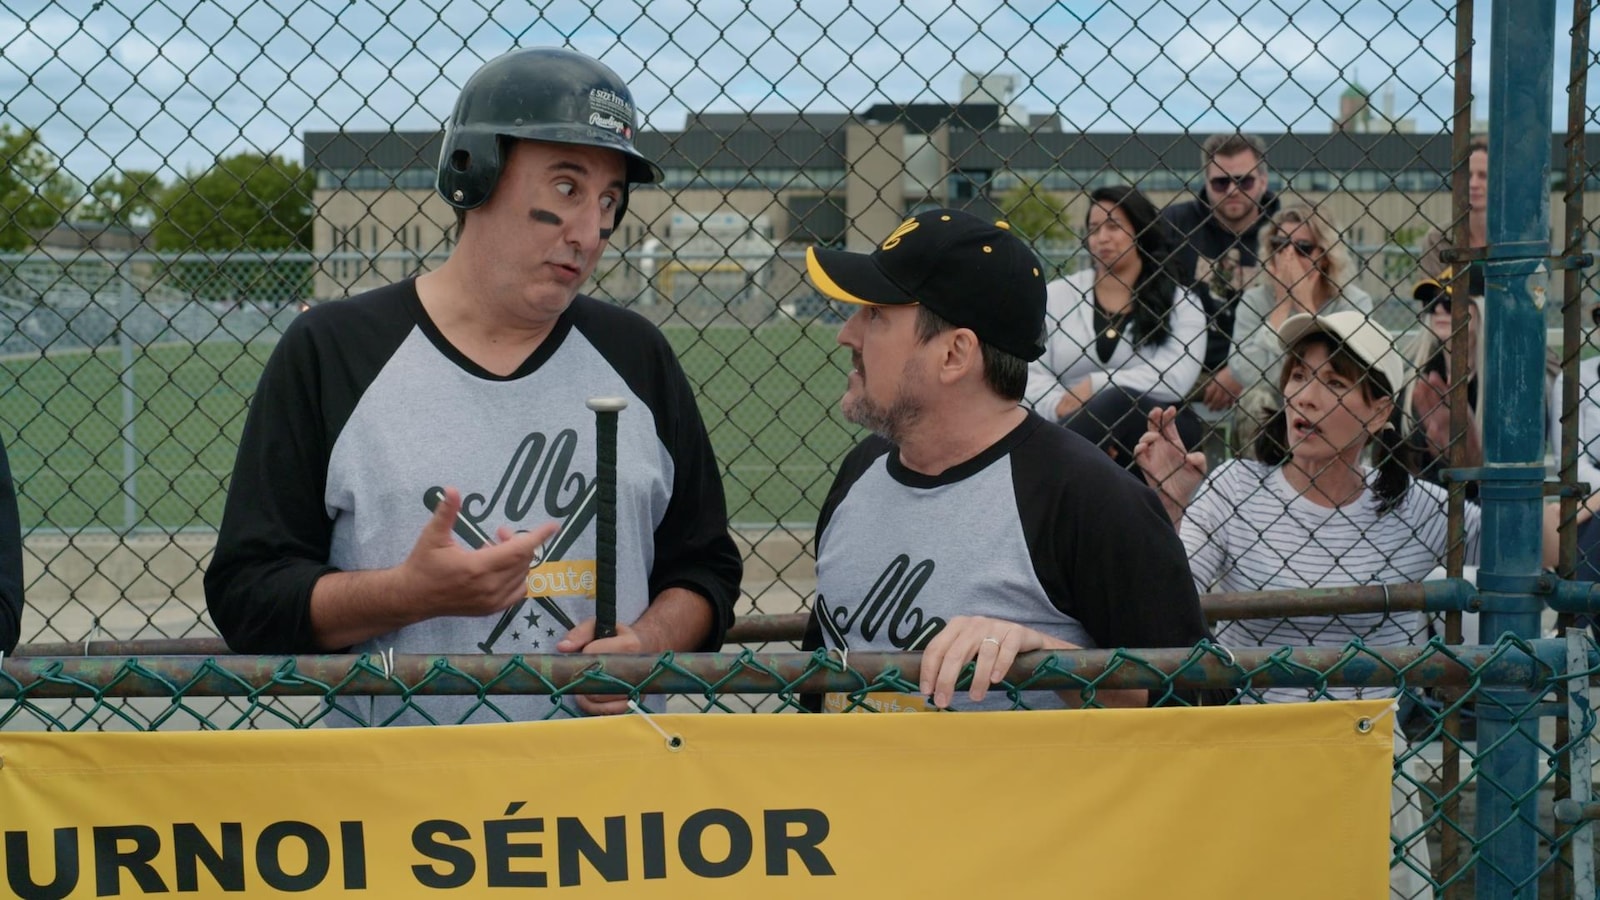 Martin parle avec Guy sur une terrain de baseball, alors que Sylvie les observe à travers une clôture.